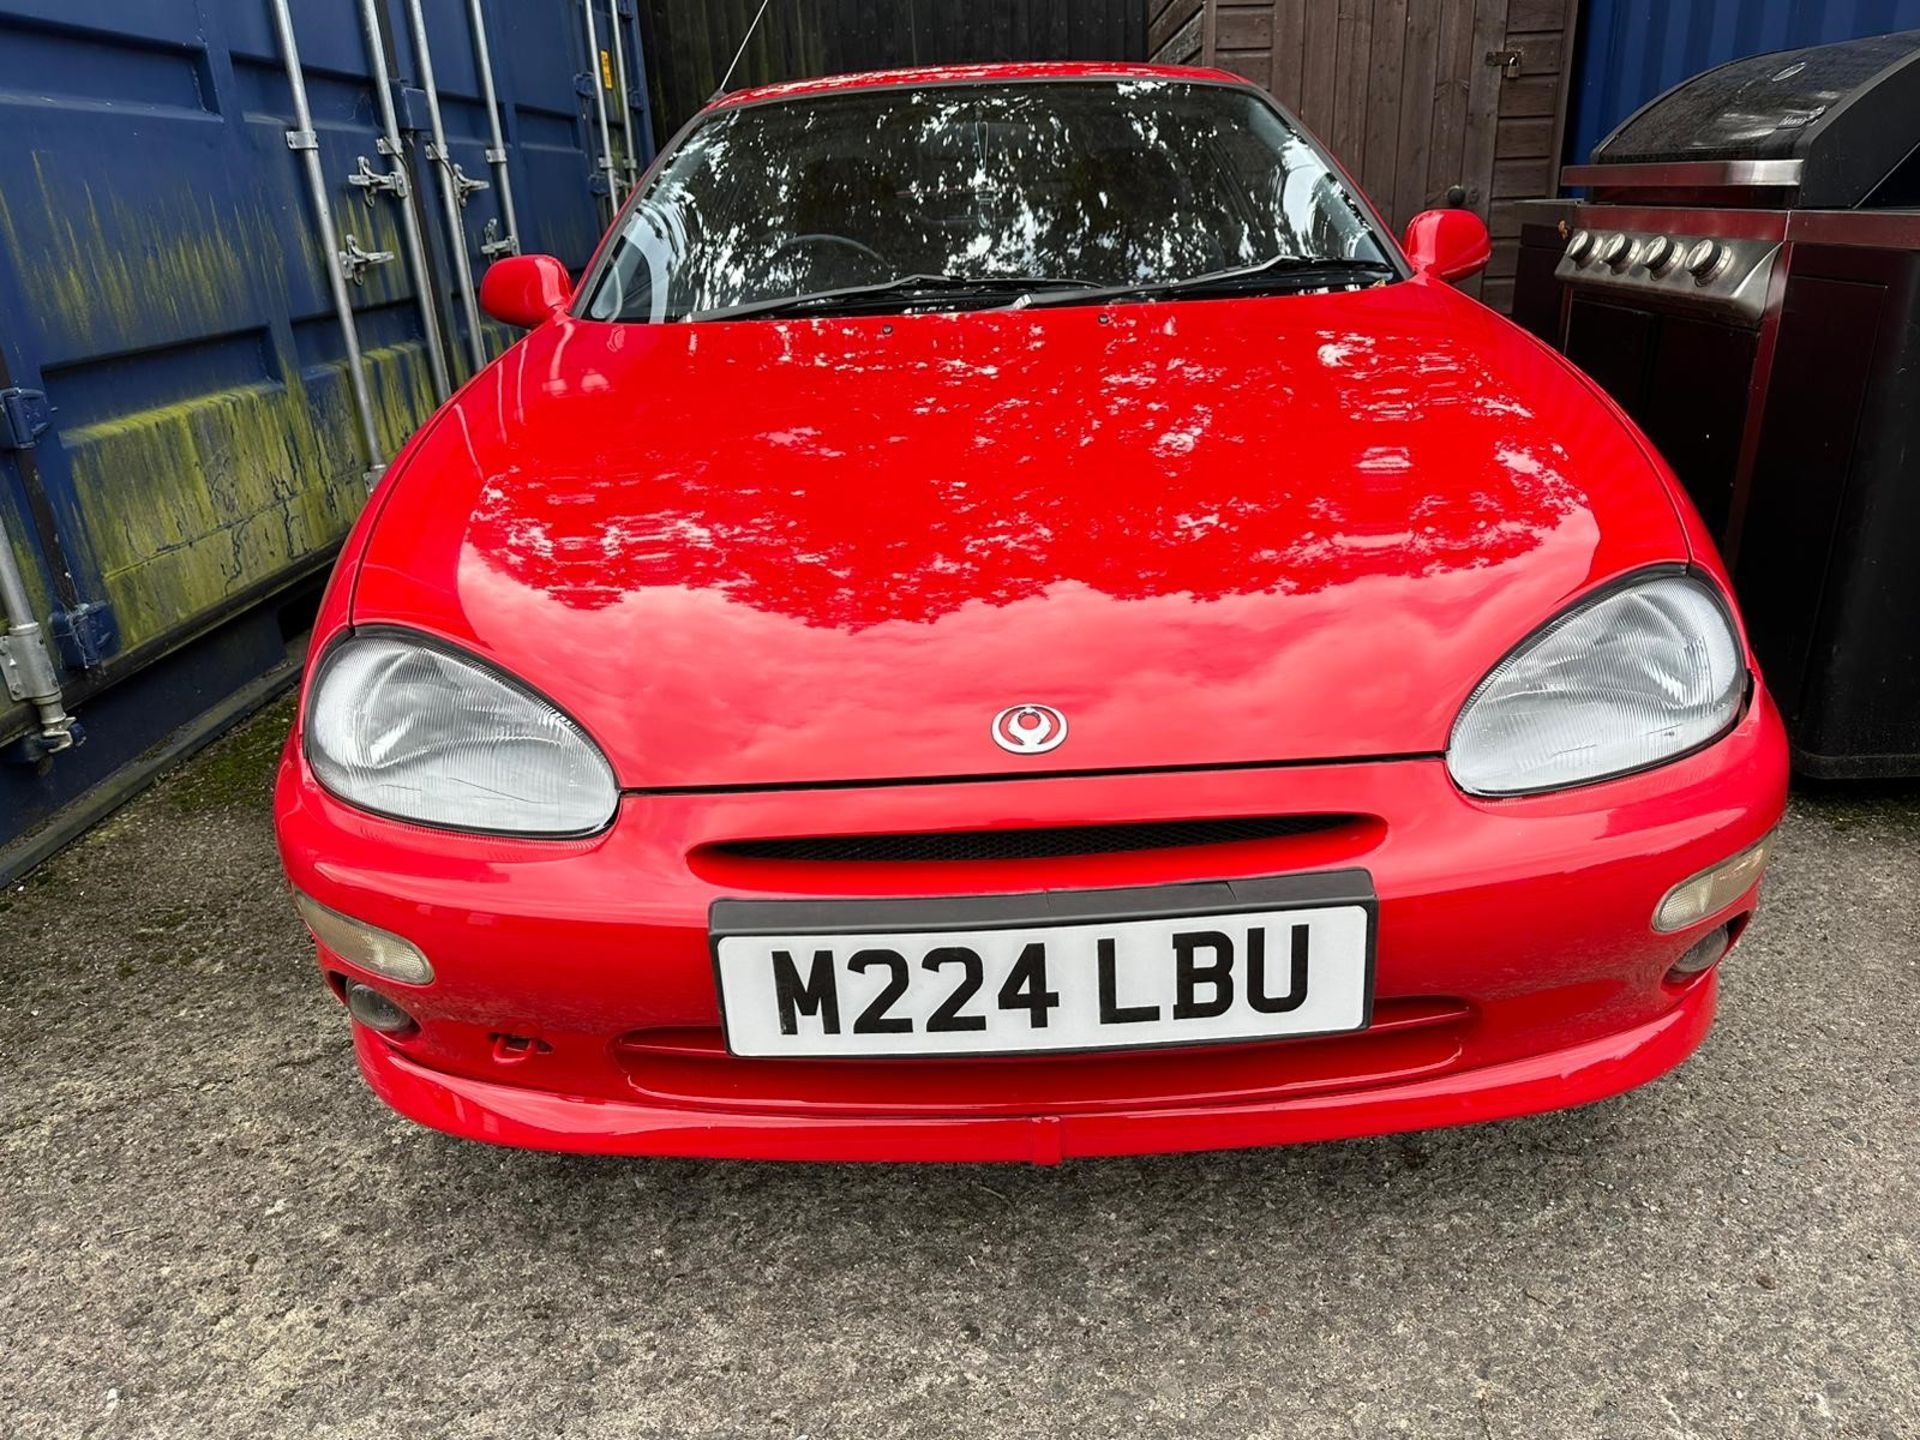 1994 Mazda MX3 1.8 V6***Being sold without reserve*** Registration number M224 LBU Blaze red